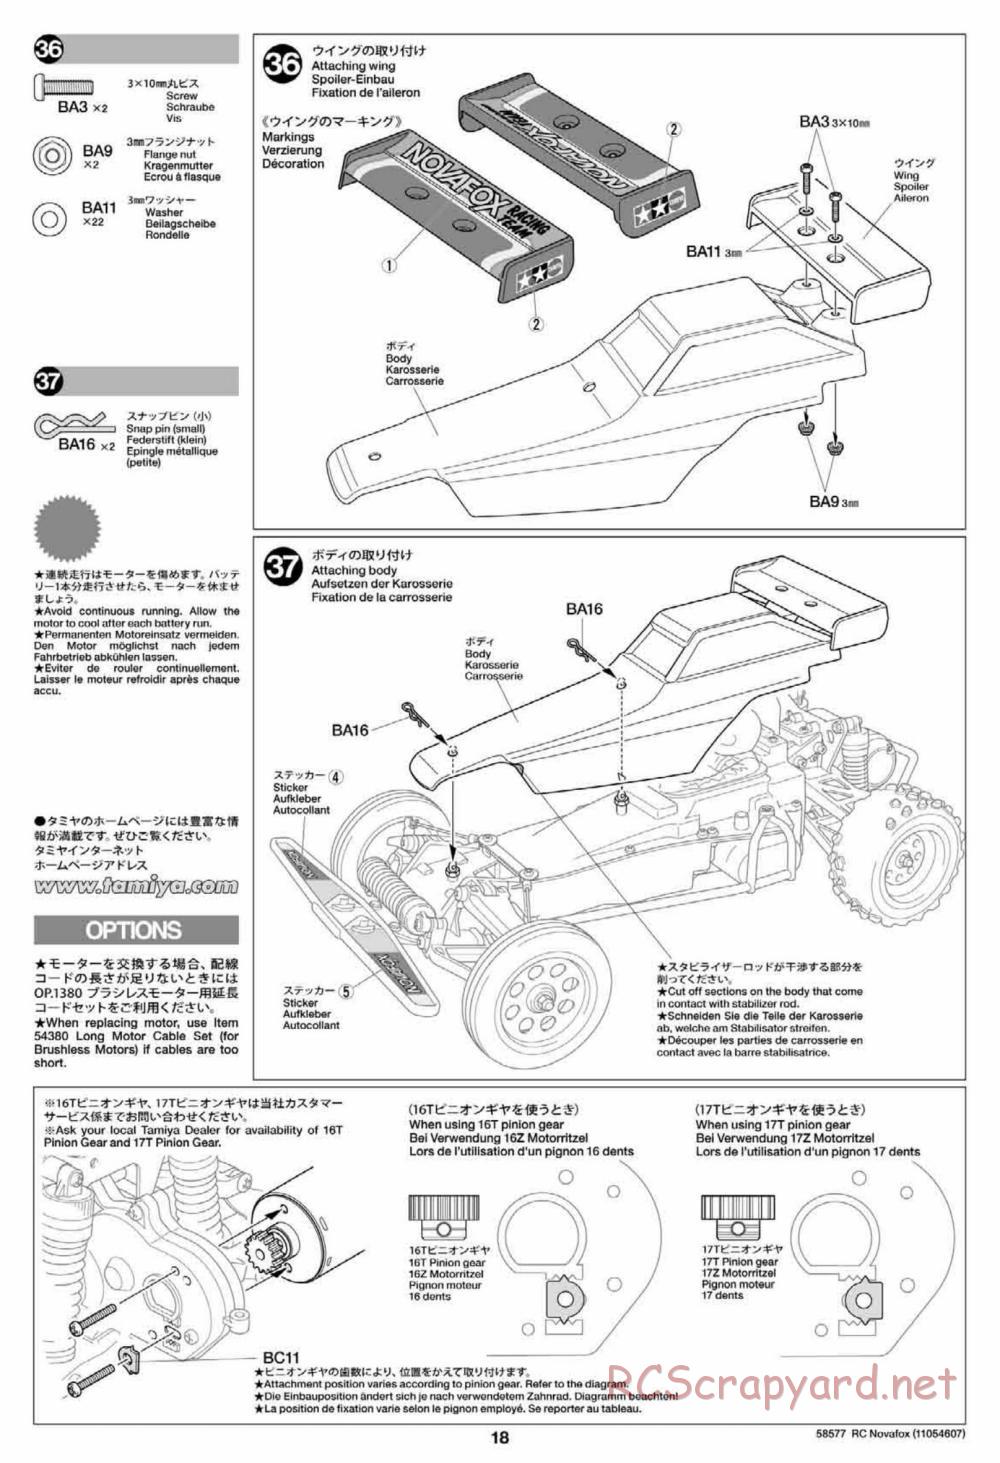 Tamiya - Novafox Chassis - Manual - Page 18